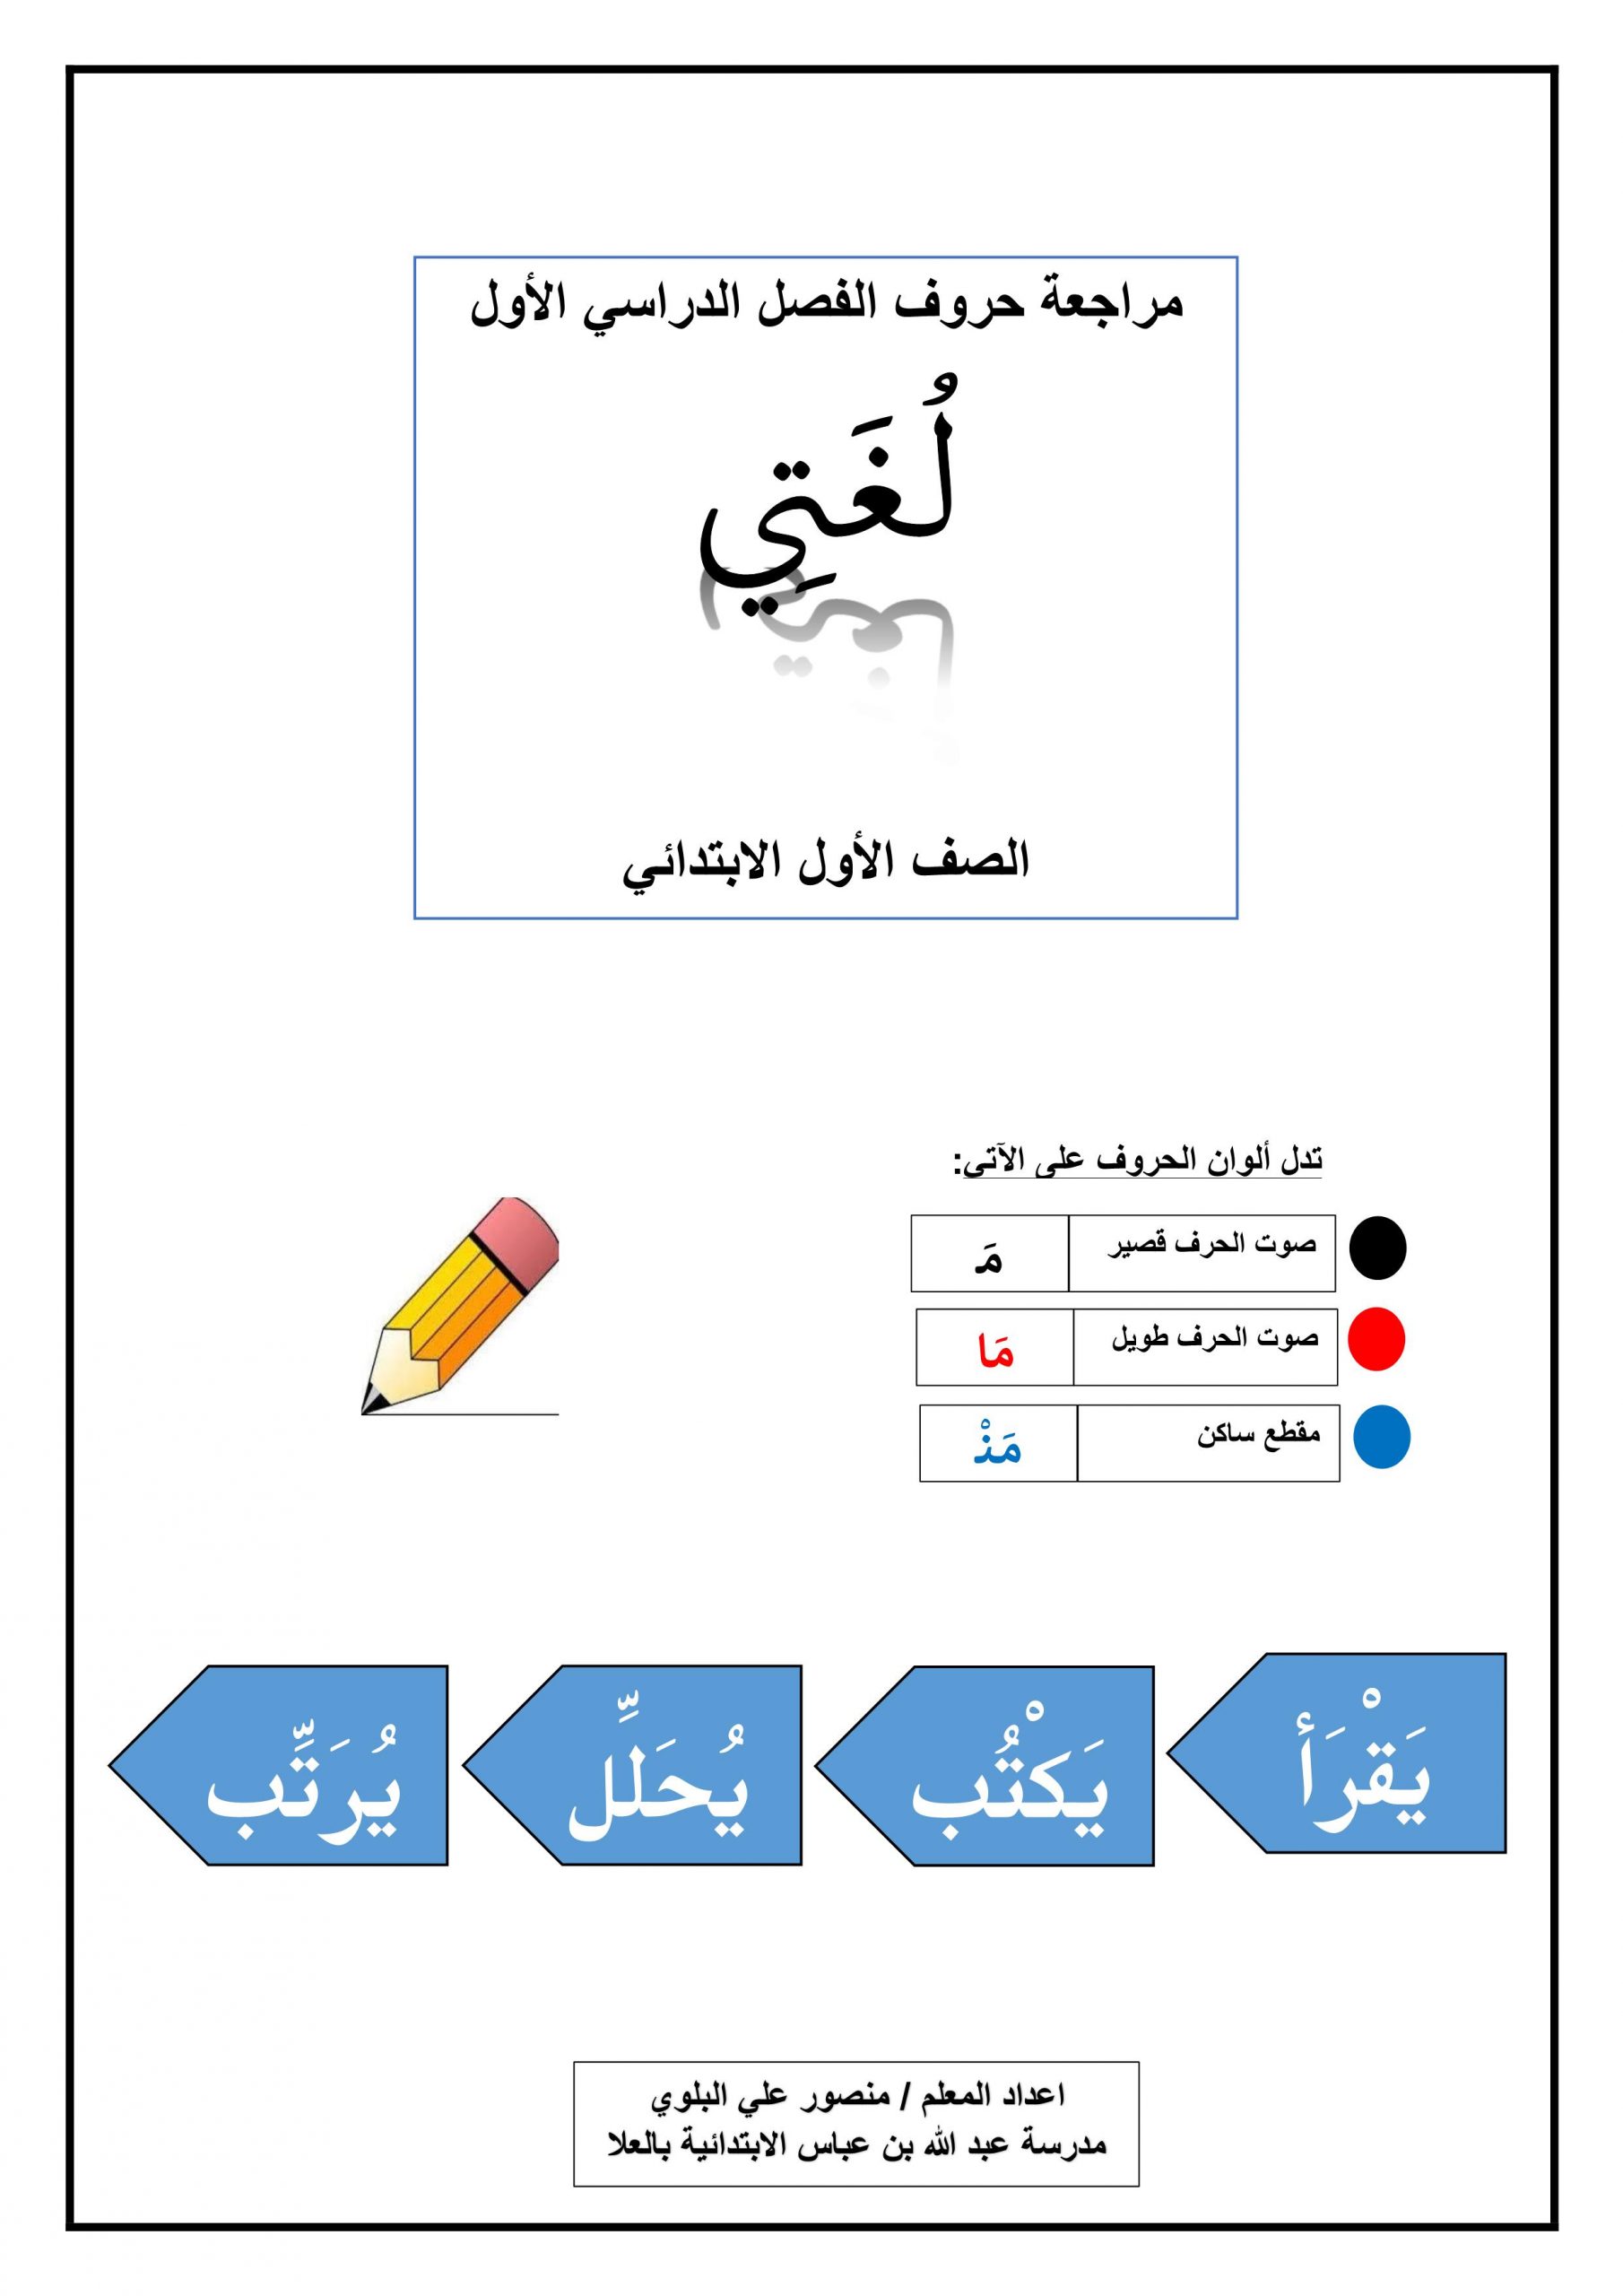 اوراق عمل متنوعة لمراجعة الحروف الصف الاول مادة اللغة العربية 